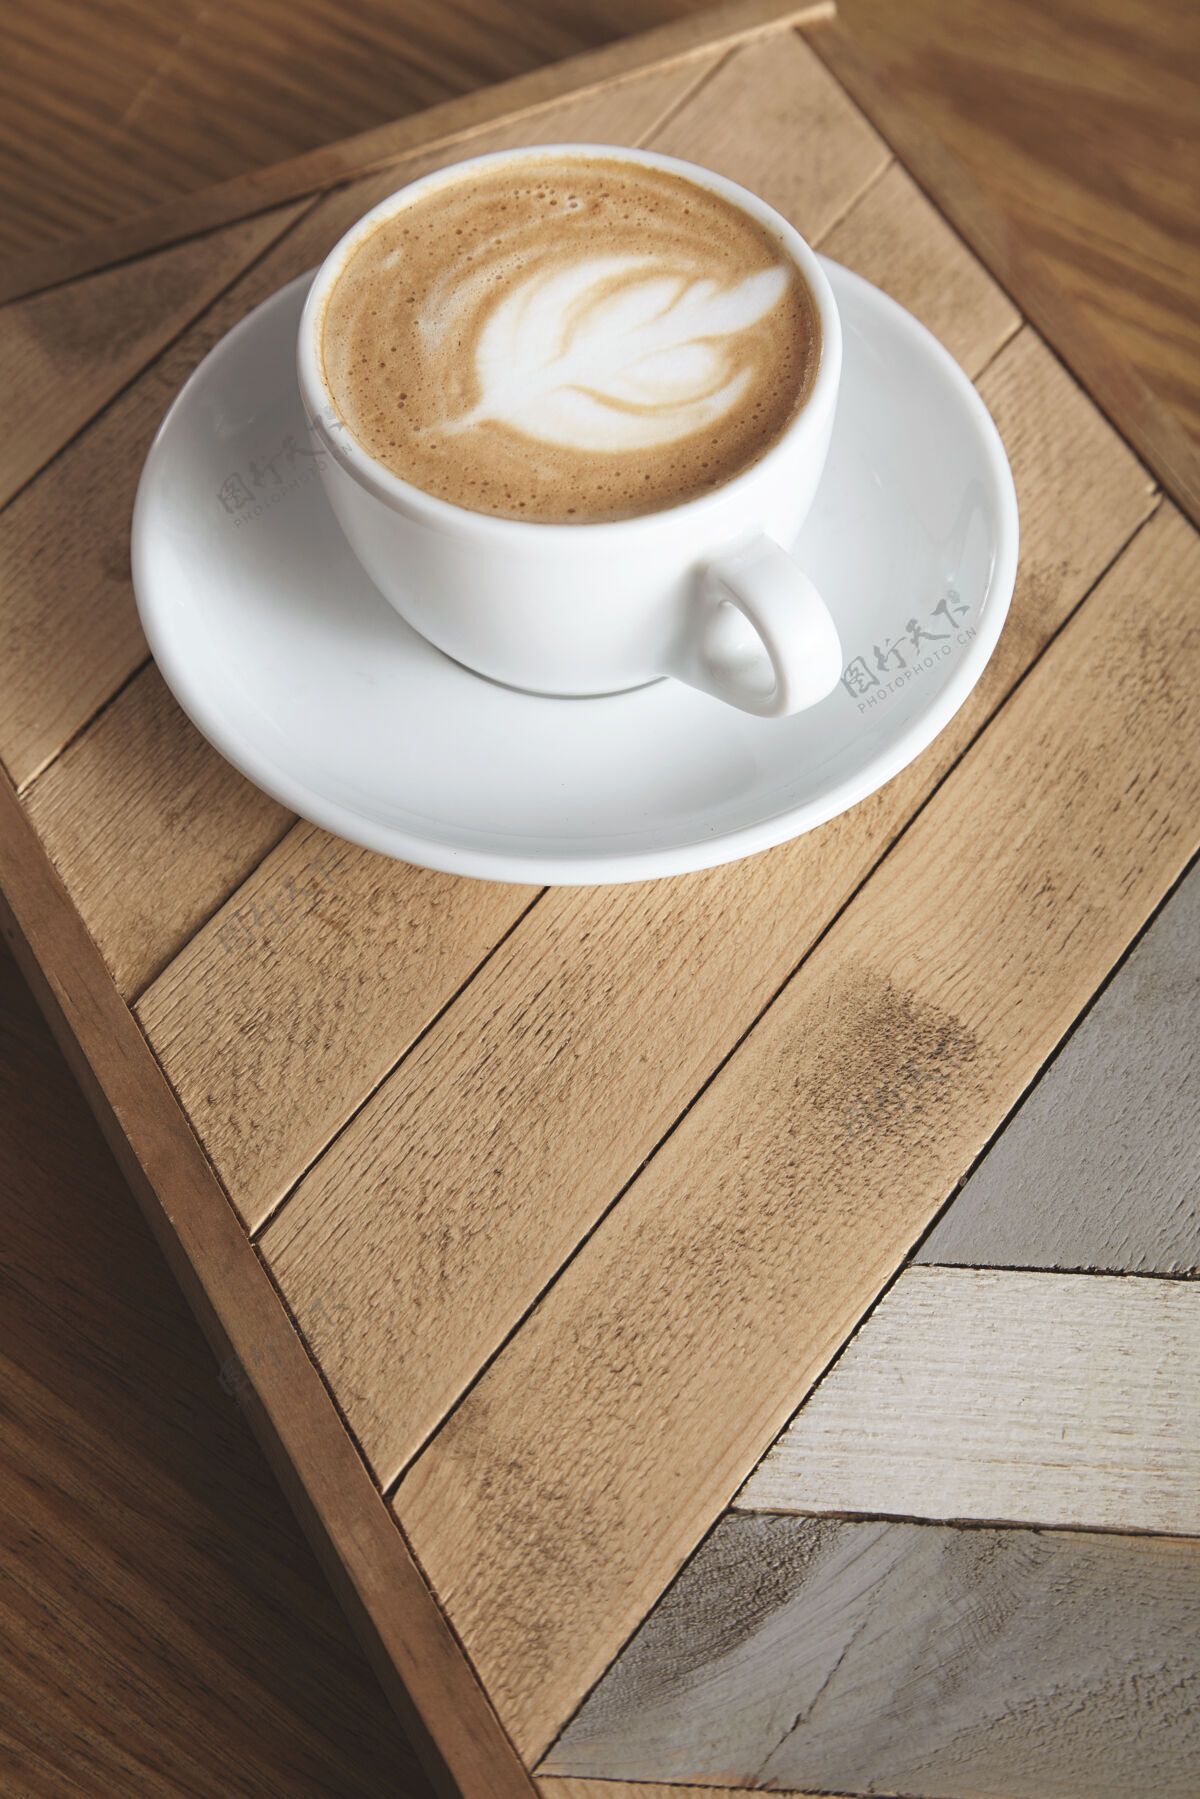 浓缩咖啡茶杯侧视图 奶油卡布奇诺拿铁 顶部有乳白色泡沫 叶形 木盘上有图案咖啡厅展示桌上有自动售货机热的咖啡